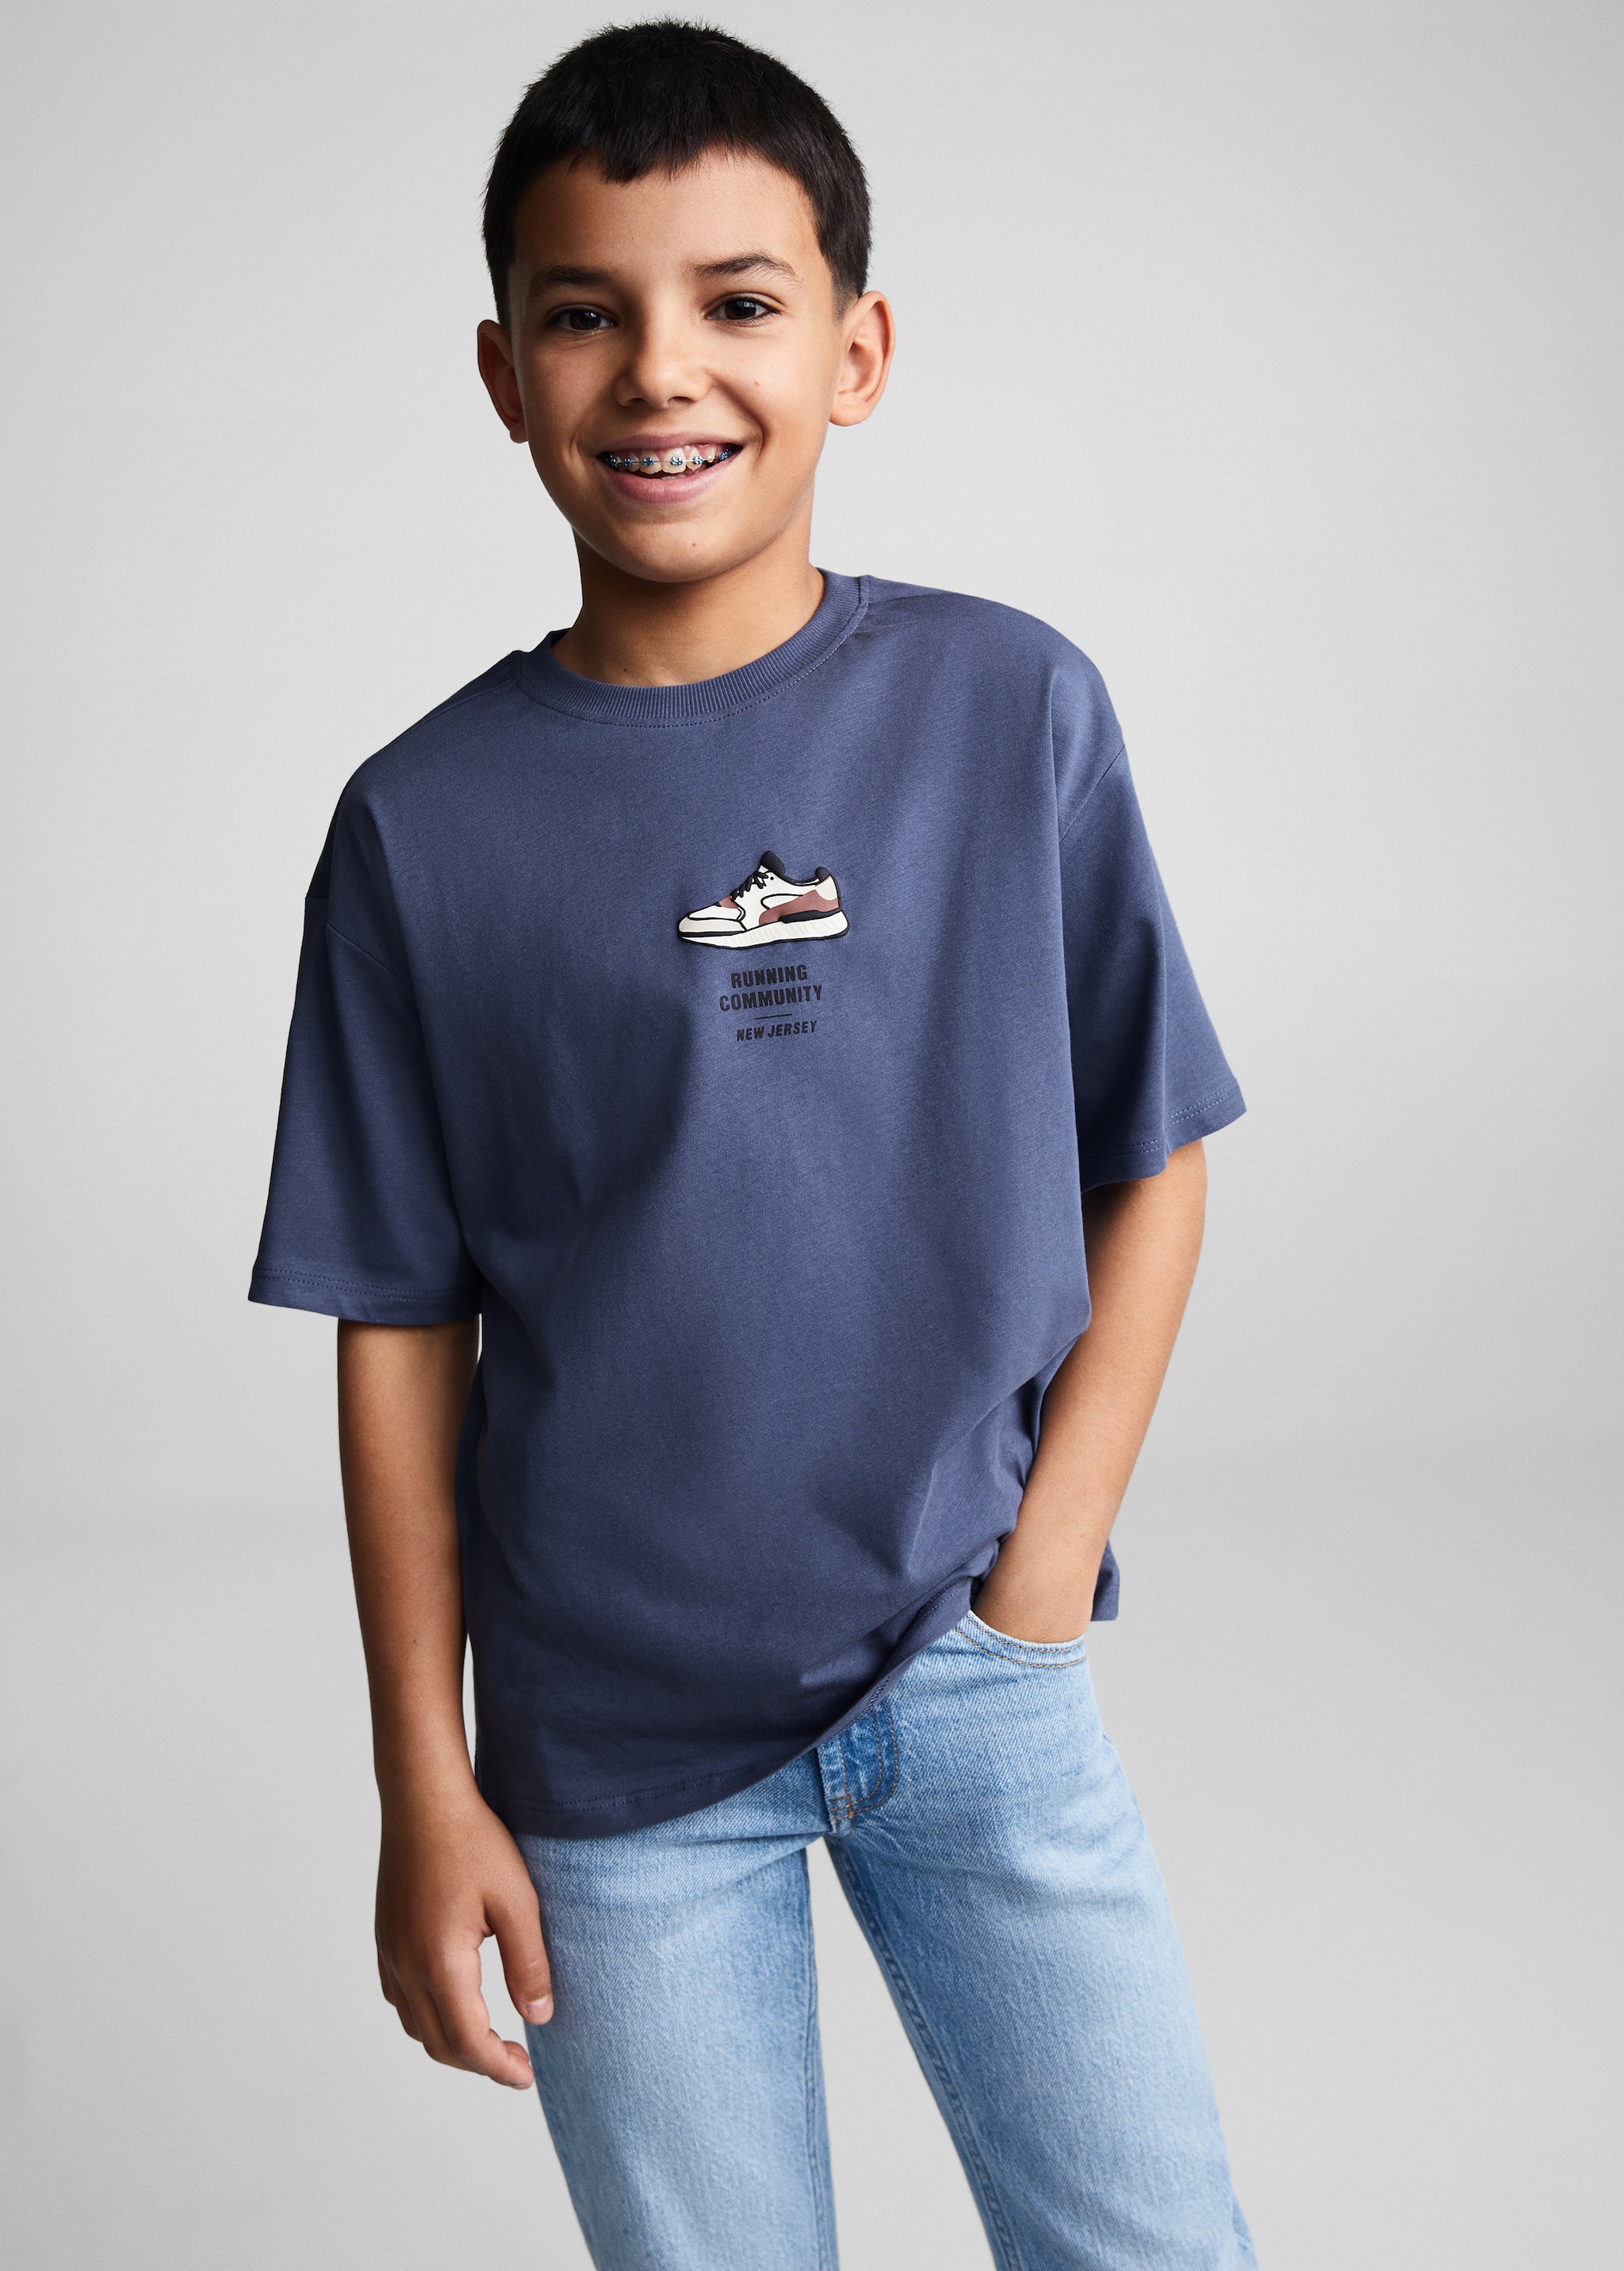 Хлопковая футболка с надписью - Средний план